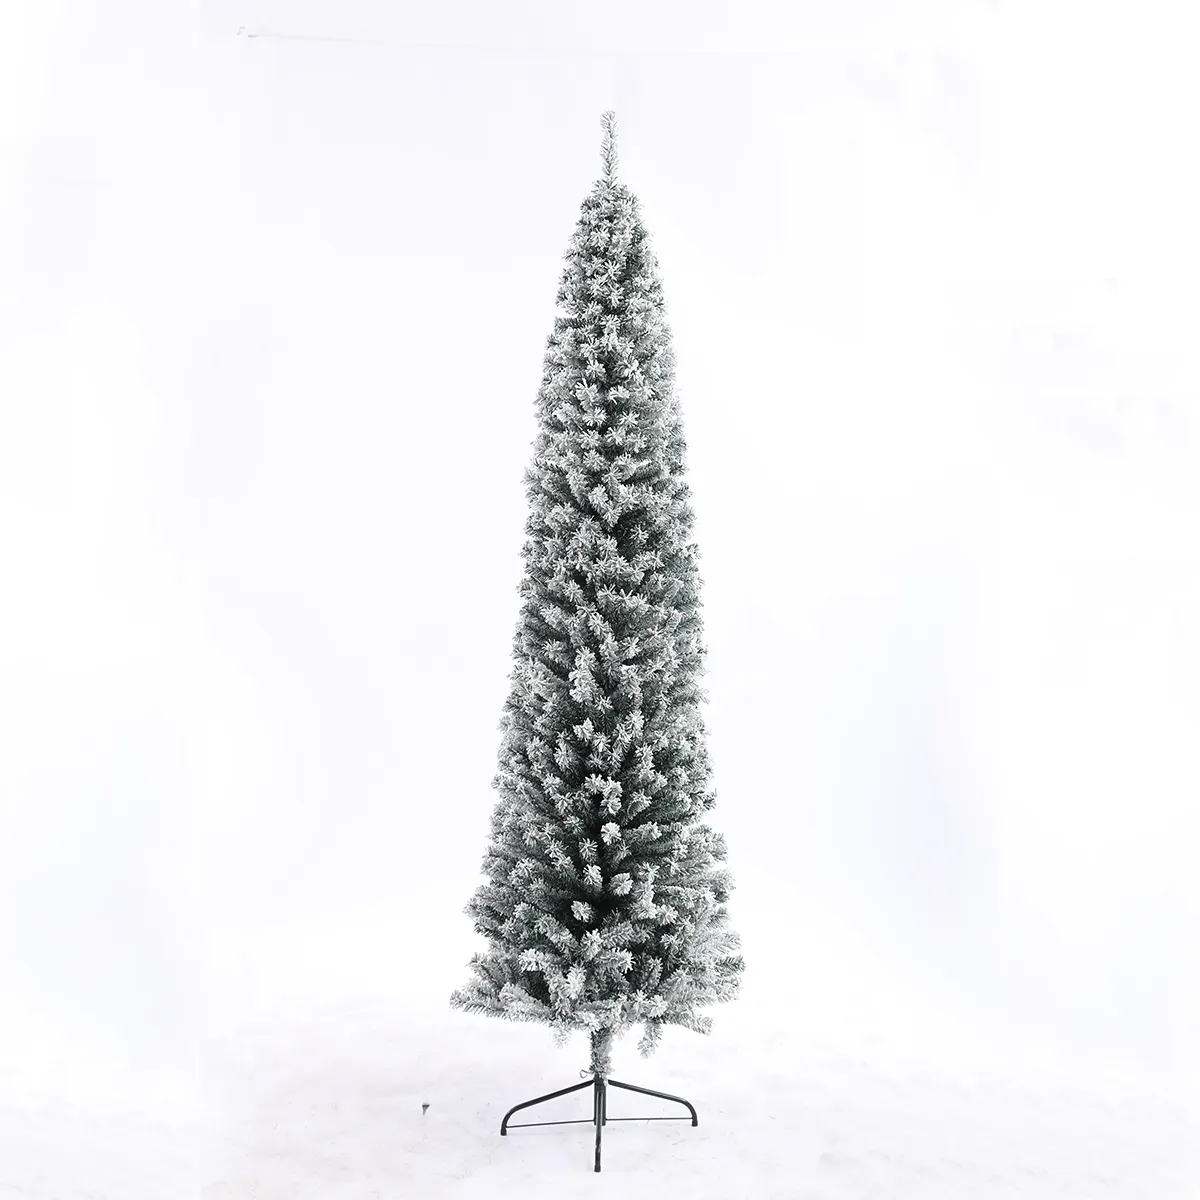 Фабрика Shengxue, высококачественные искусственные снежные Рождественские елки для онлайн и продажи в целом.